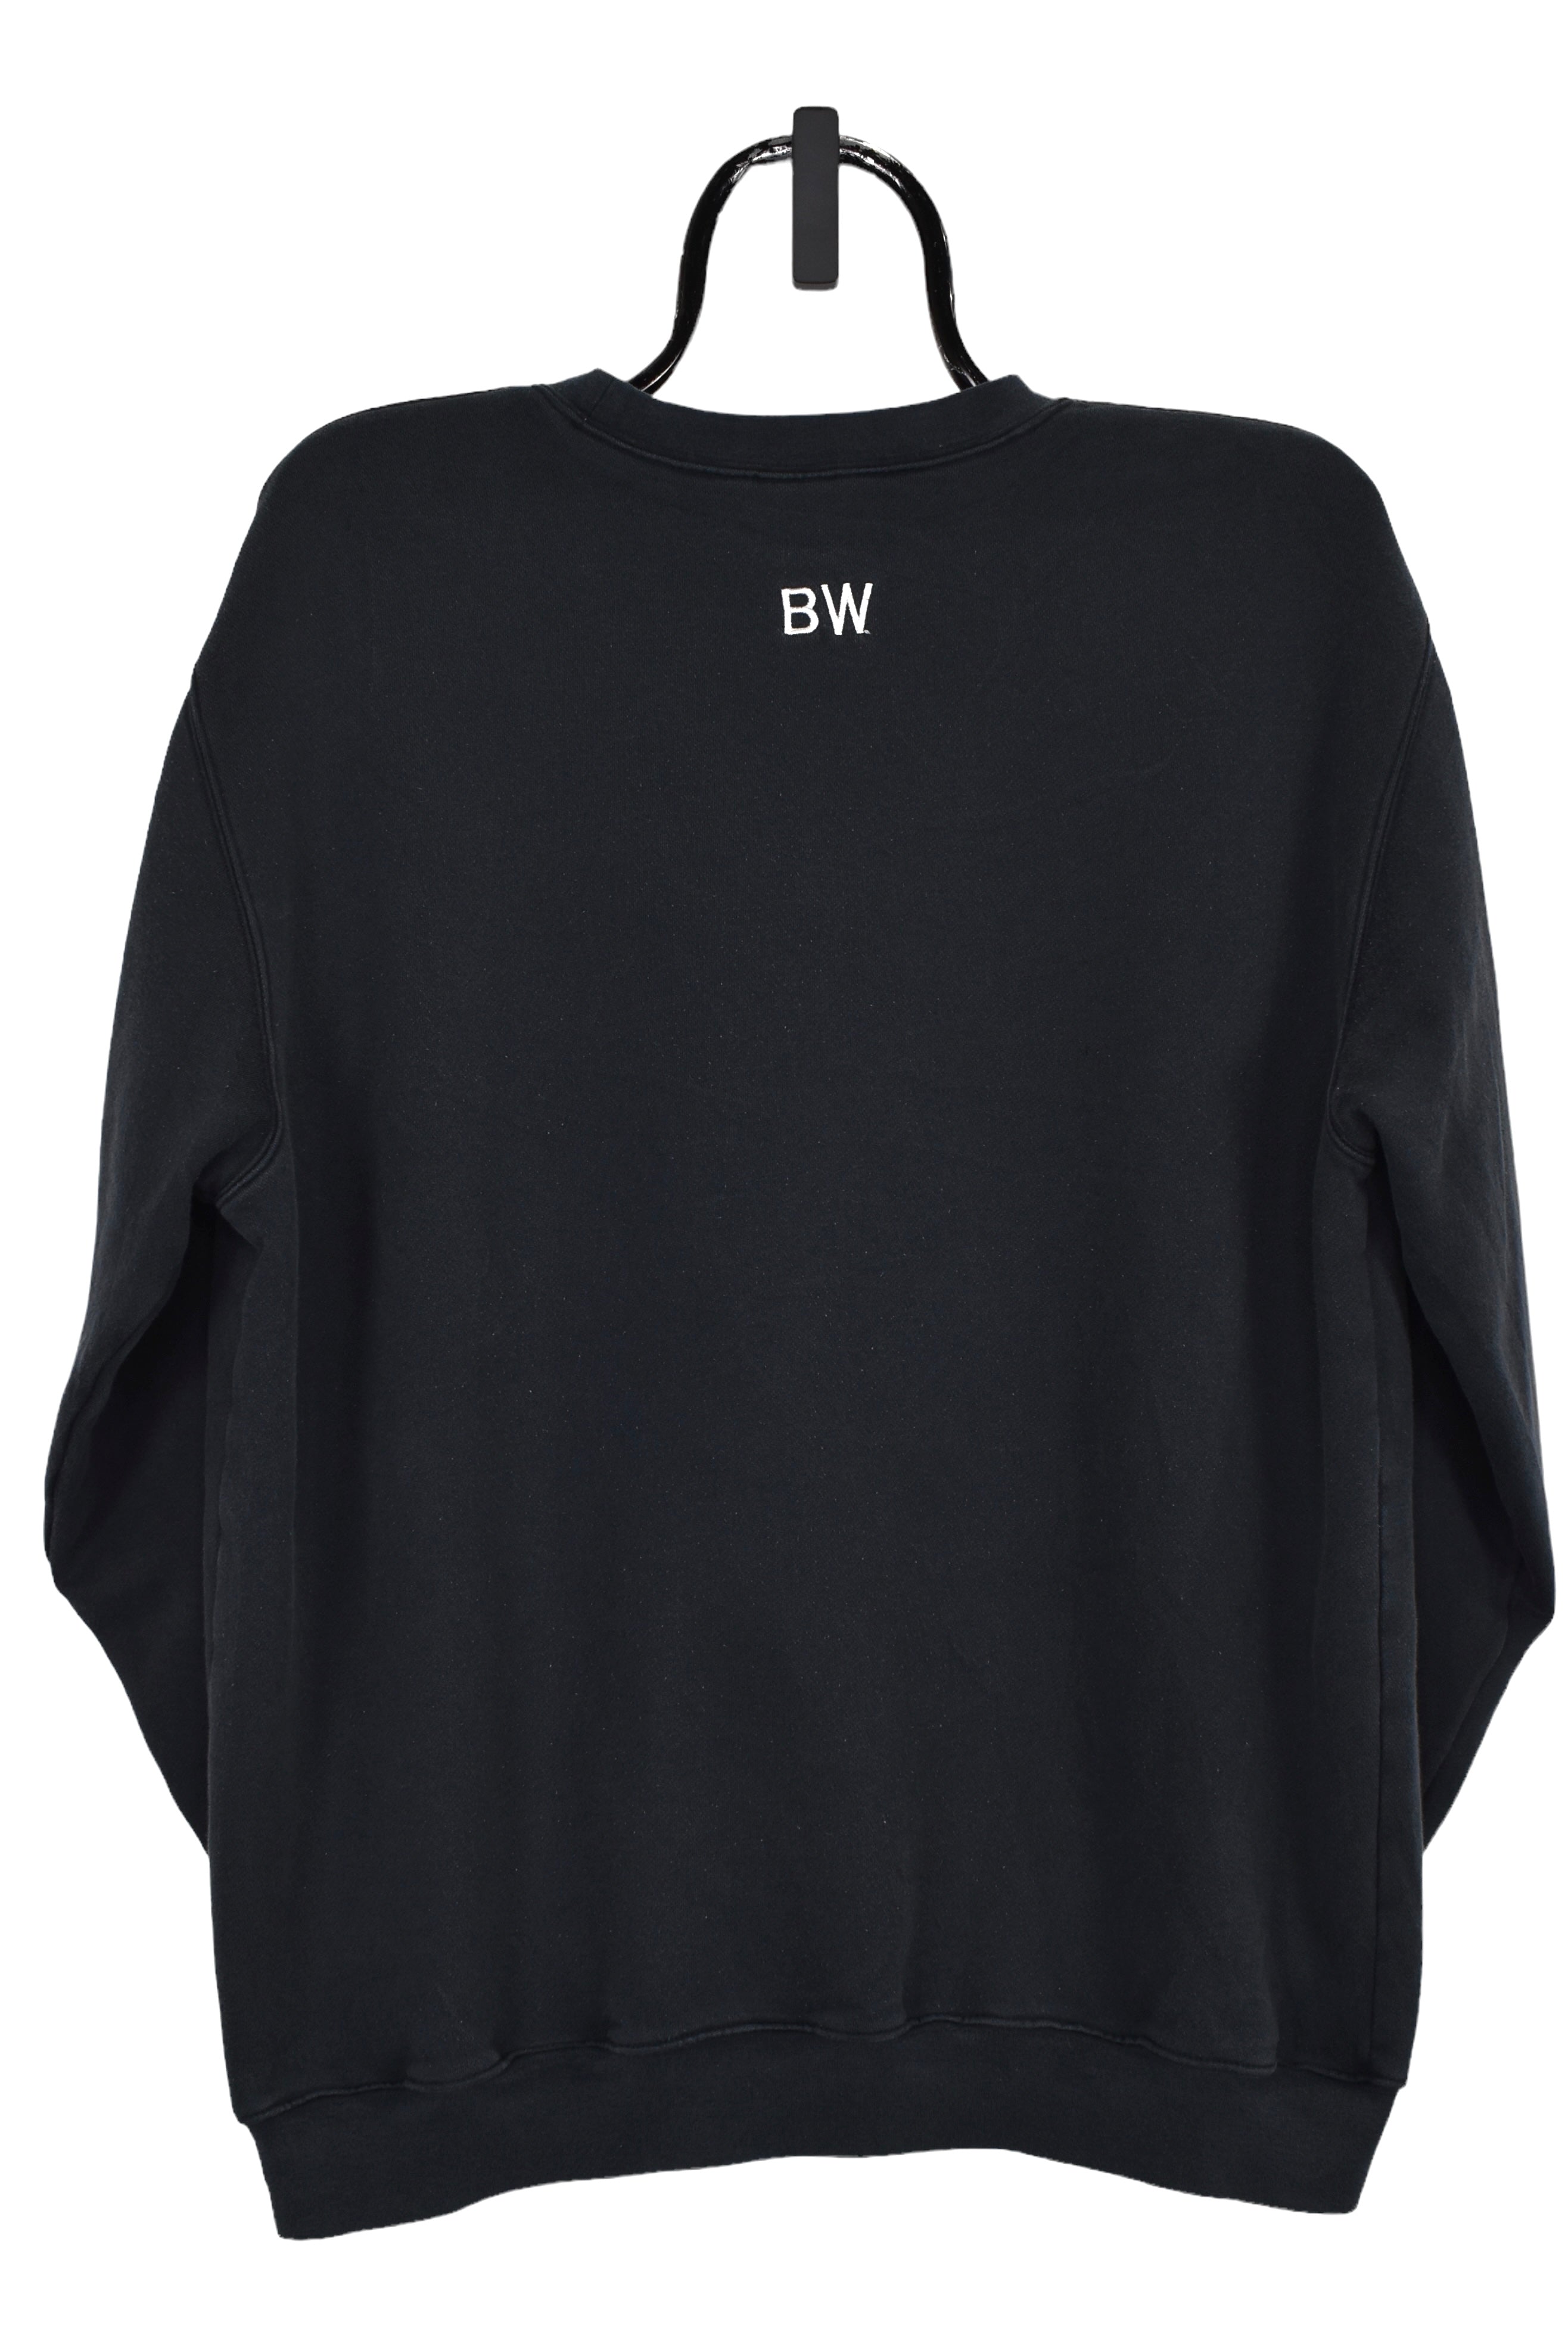 Vintage Adidas sweatshirt (L), black embroidered crewneck